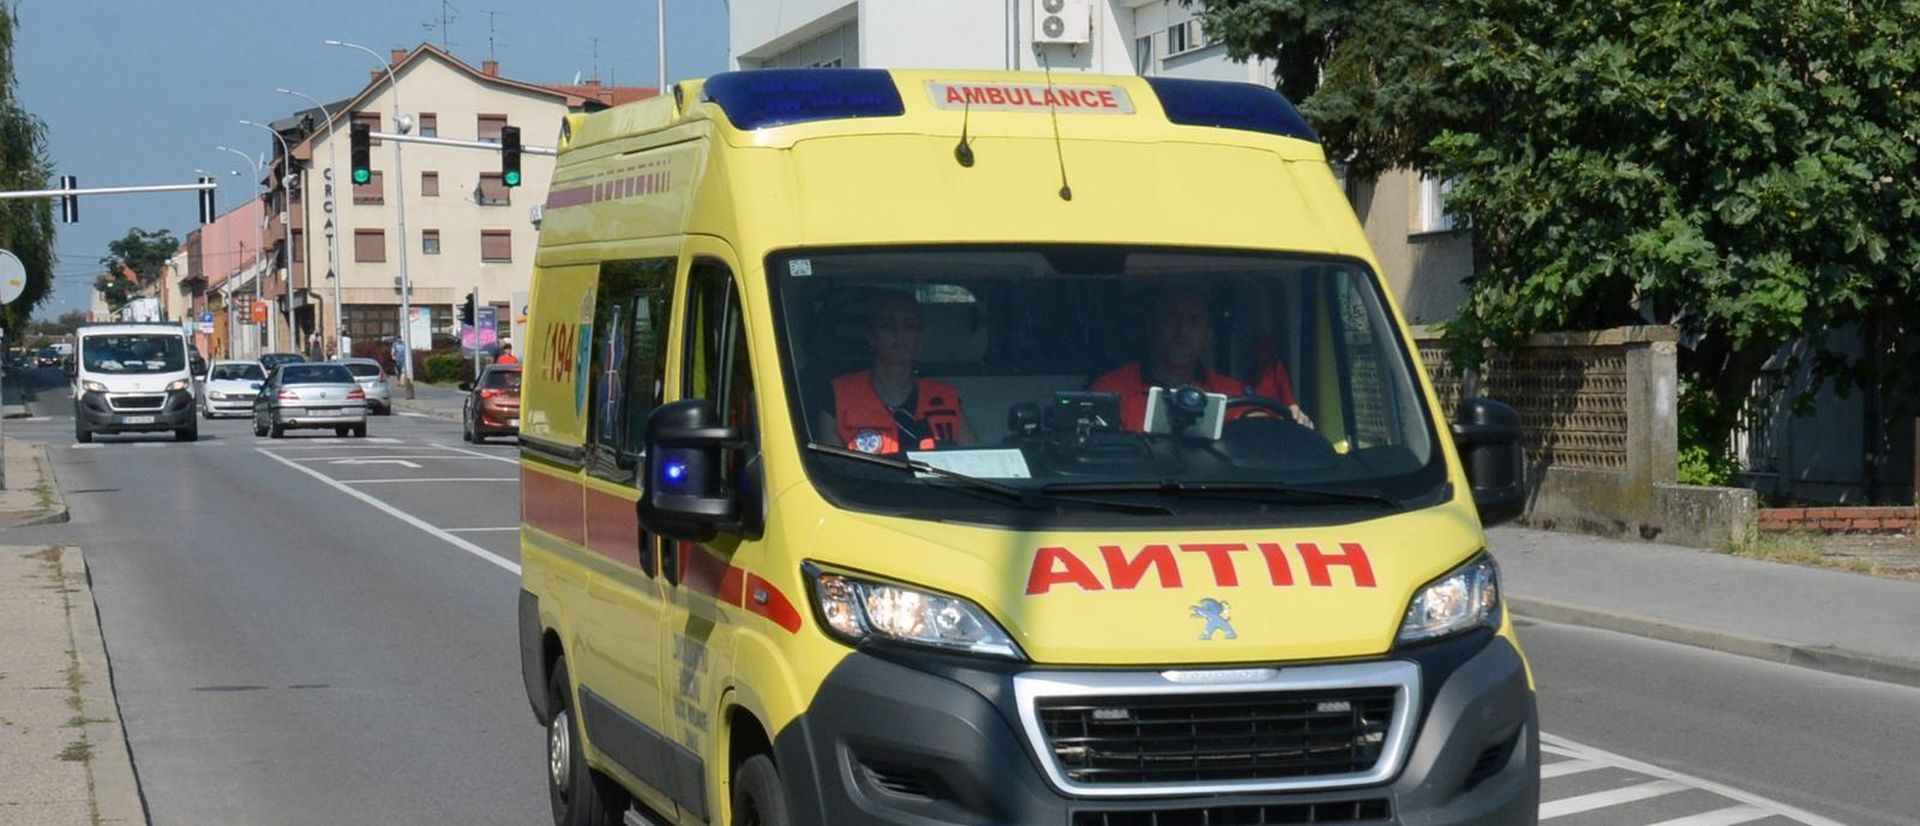 Sisak: Vozilo hitne medicinske pomoci u gradskom prometu 17.08.2018., Sisak - Vozilo hitne medicinske pomoci u gradskom prometu. 
Photo: Nikola Cutuk/PIXSELL